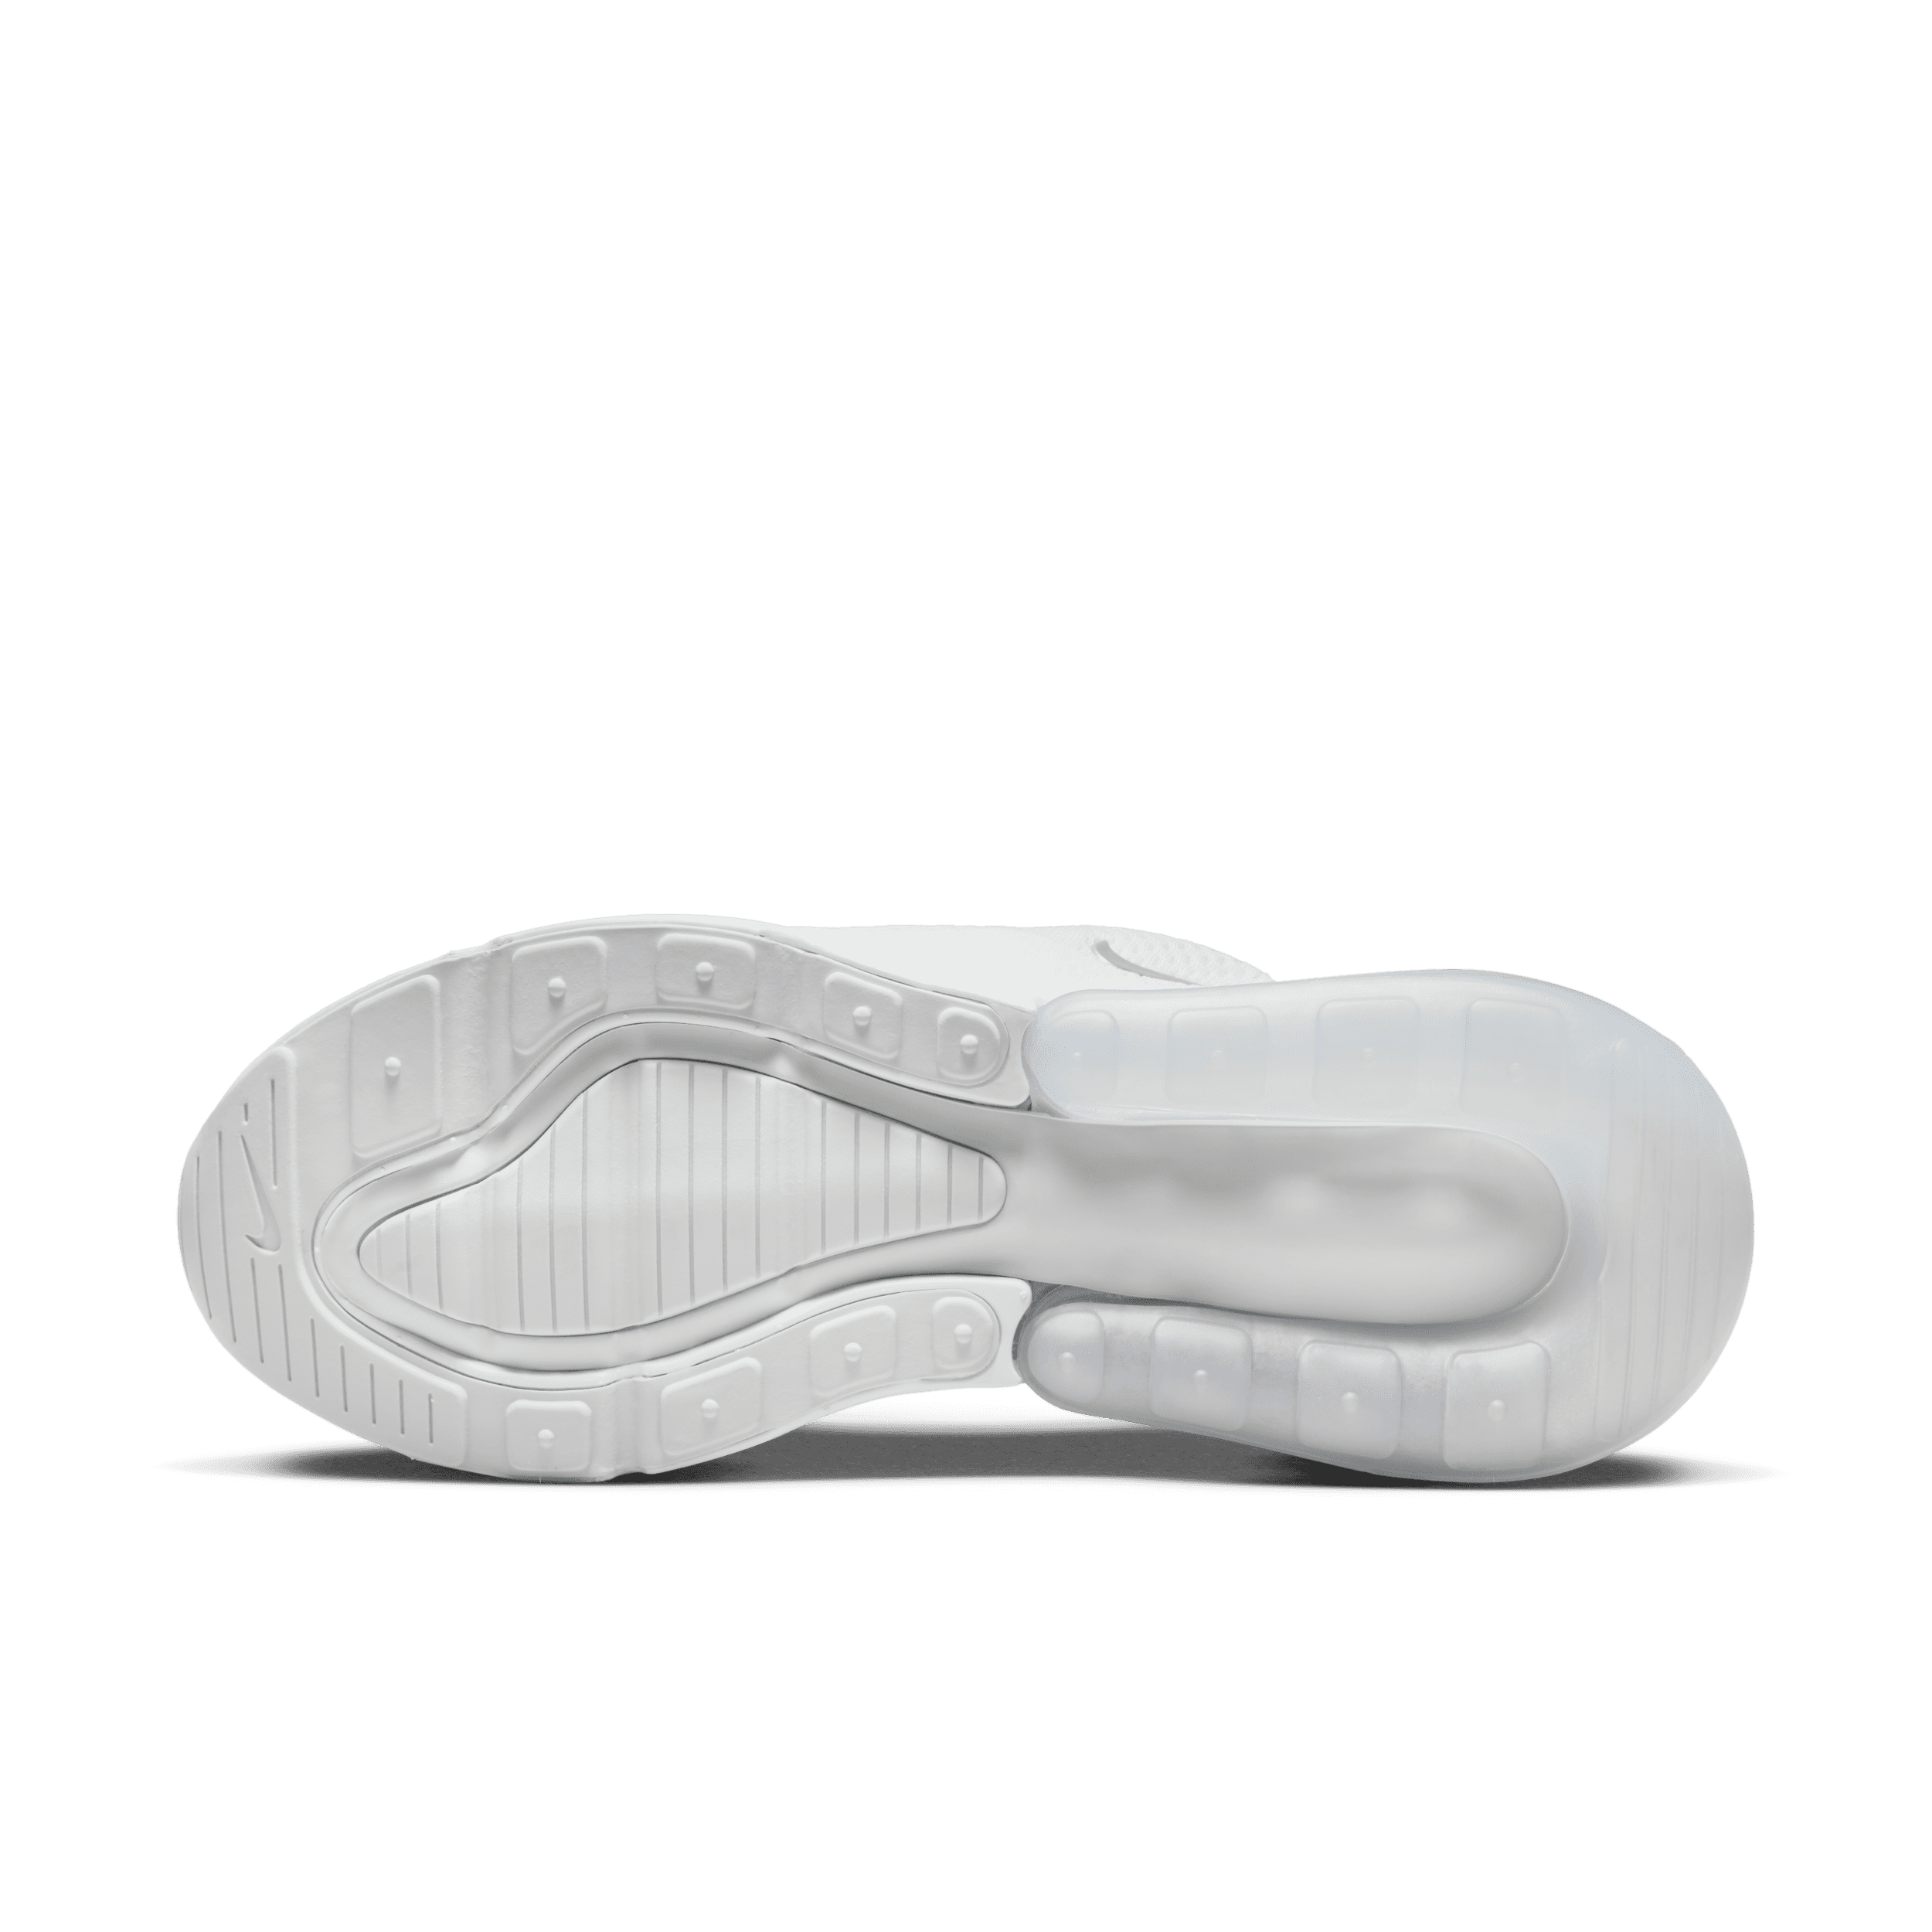 Nike Air Max 270 Damenschuh - Weiß